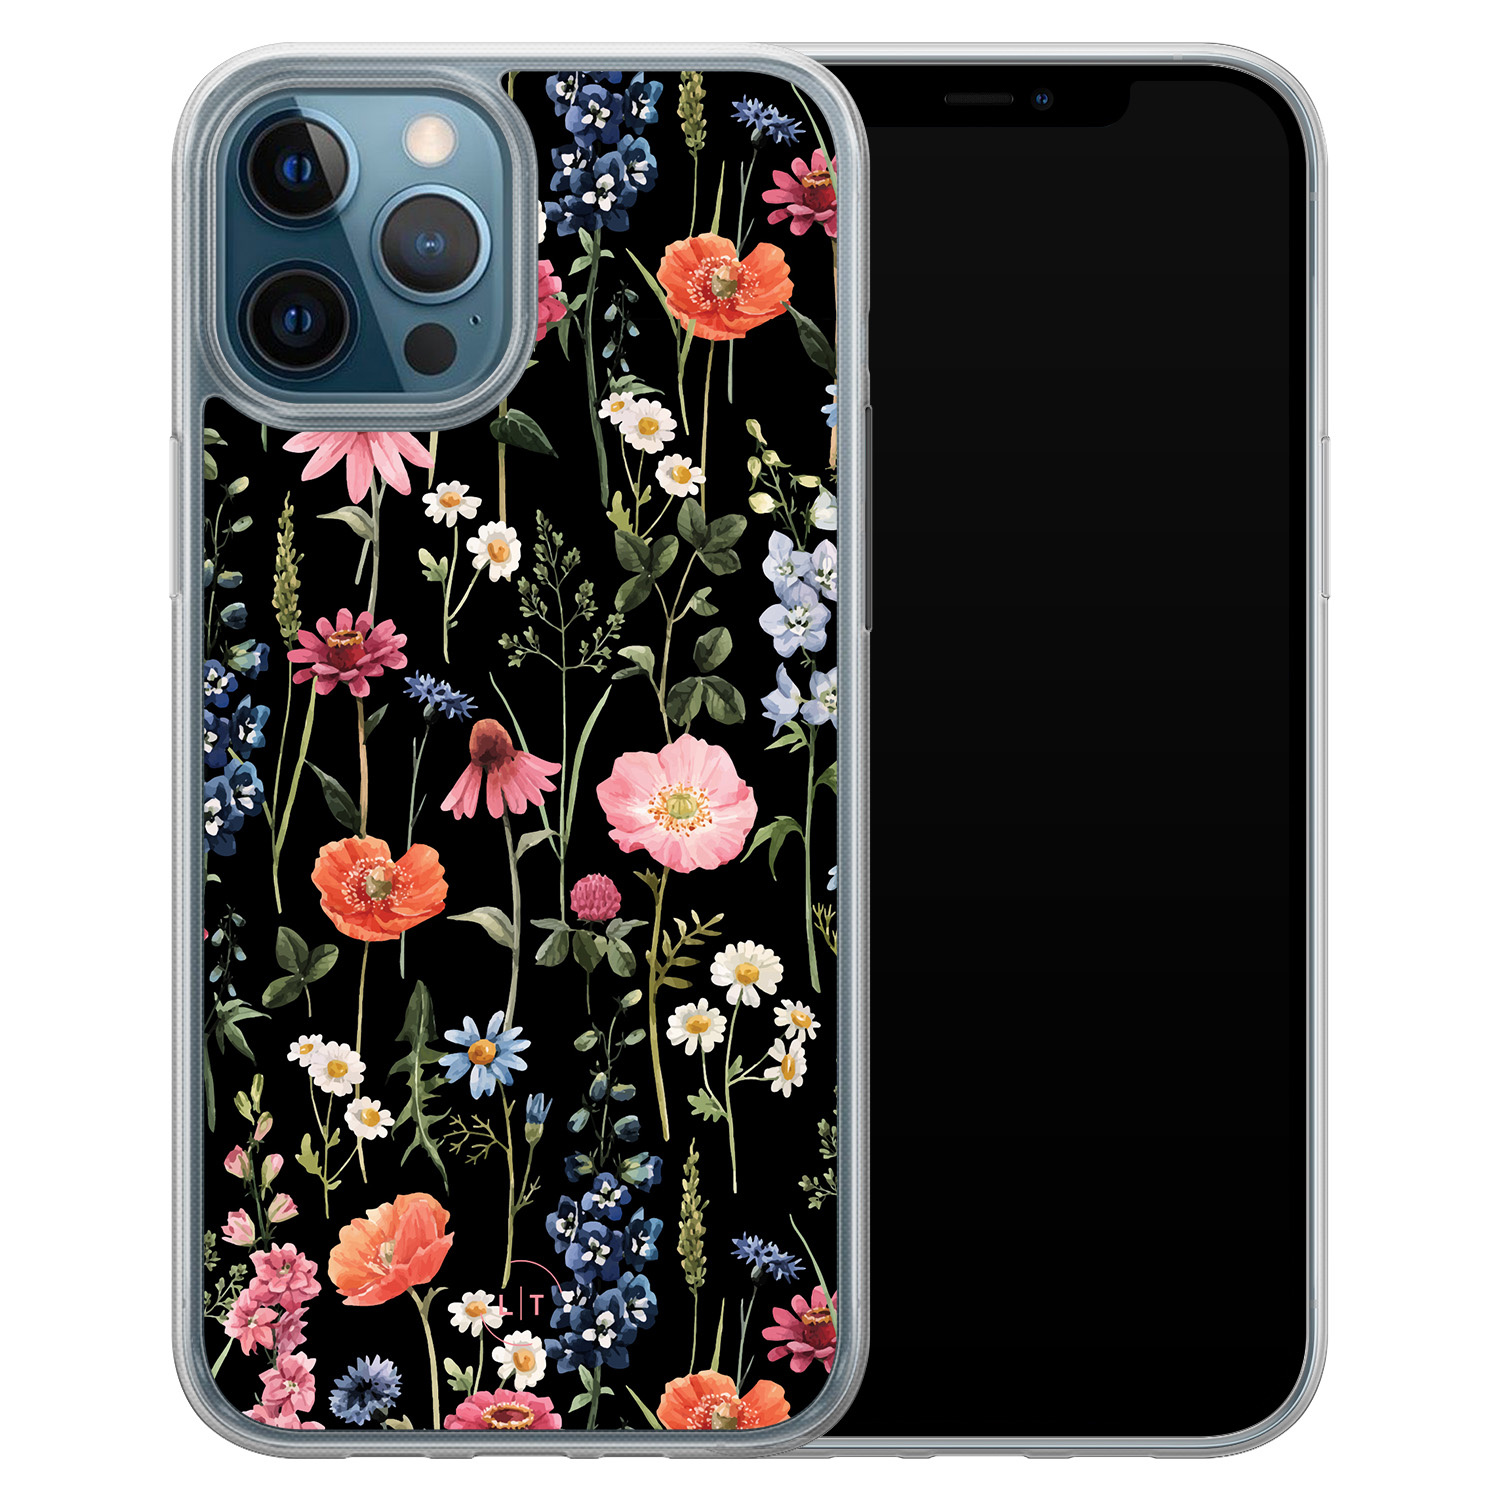 Leuke Telefoonhoesjes iPhone 12 (Pro) hybride hoesje - Dark flowers